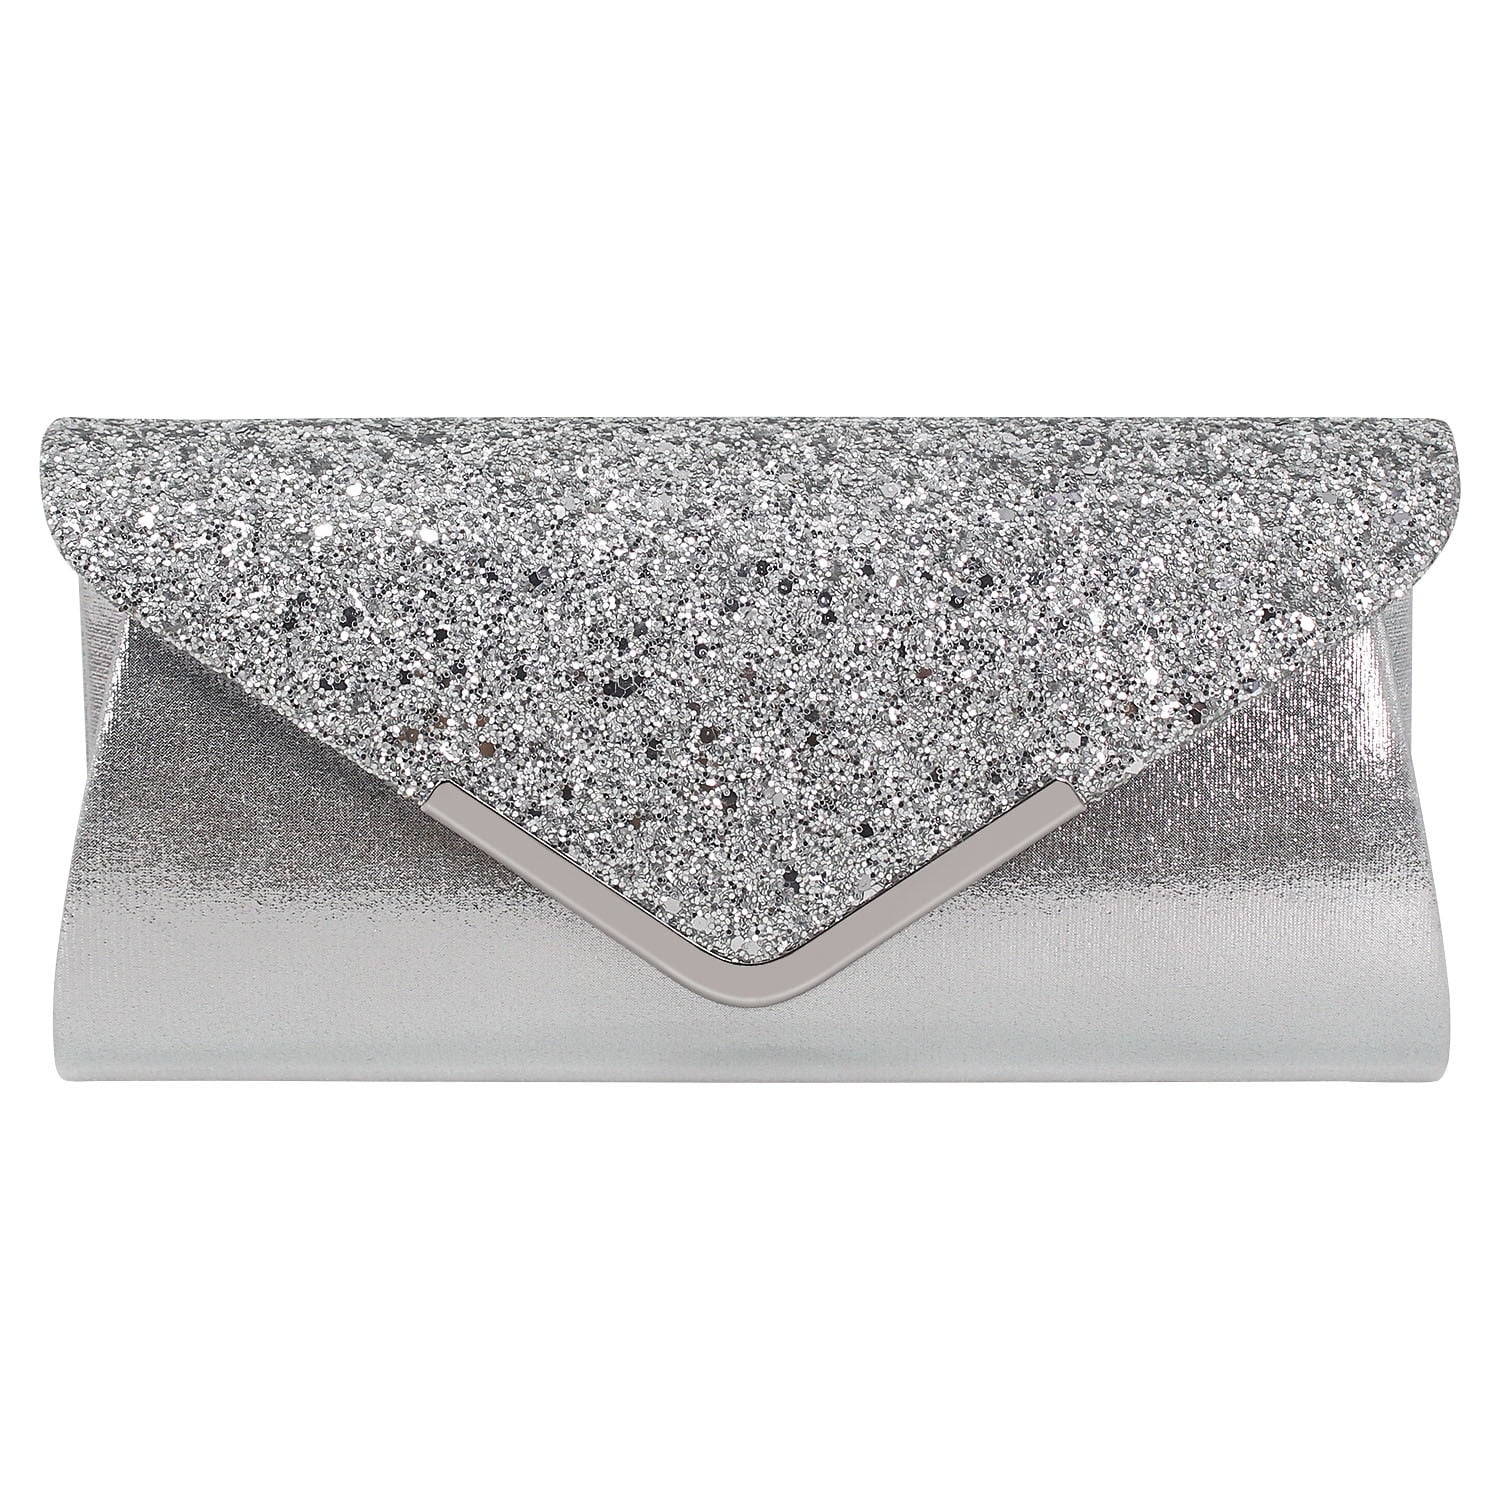 Silver Clutch Bag, Silk Bridal Purse, Wedding Clutch Bag With Chain, Bridal  Clutch With Personalisation - Etsy